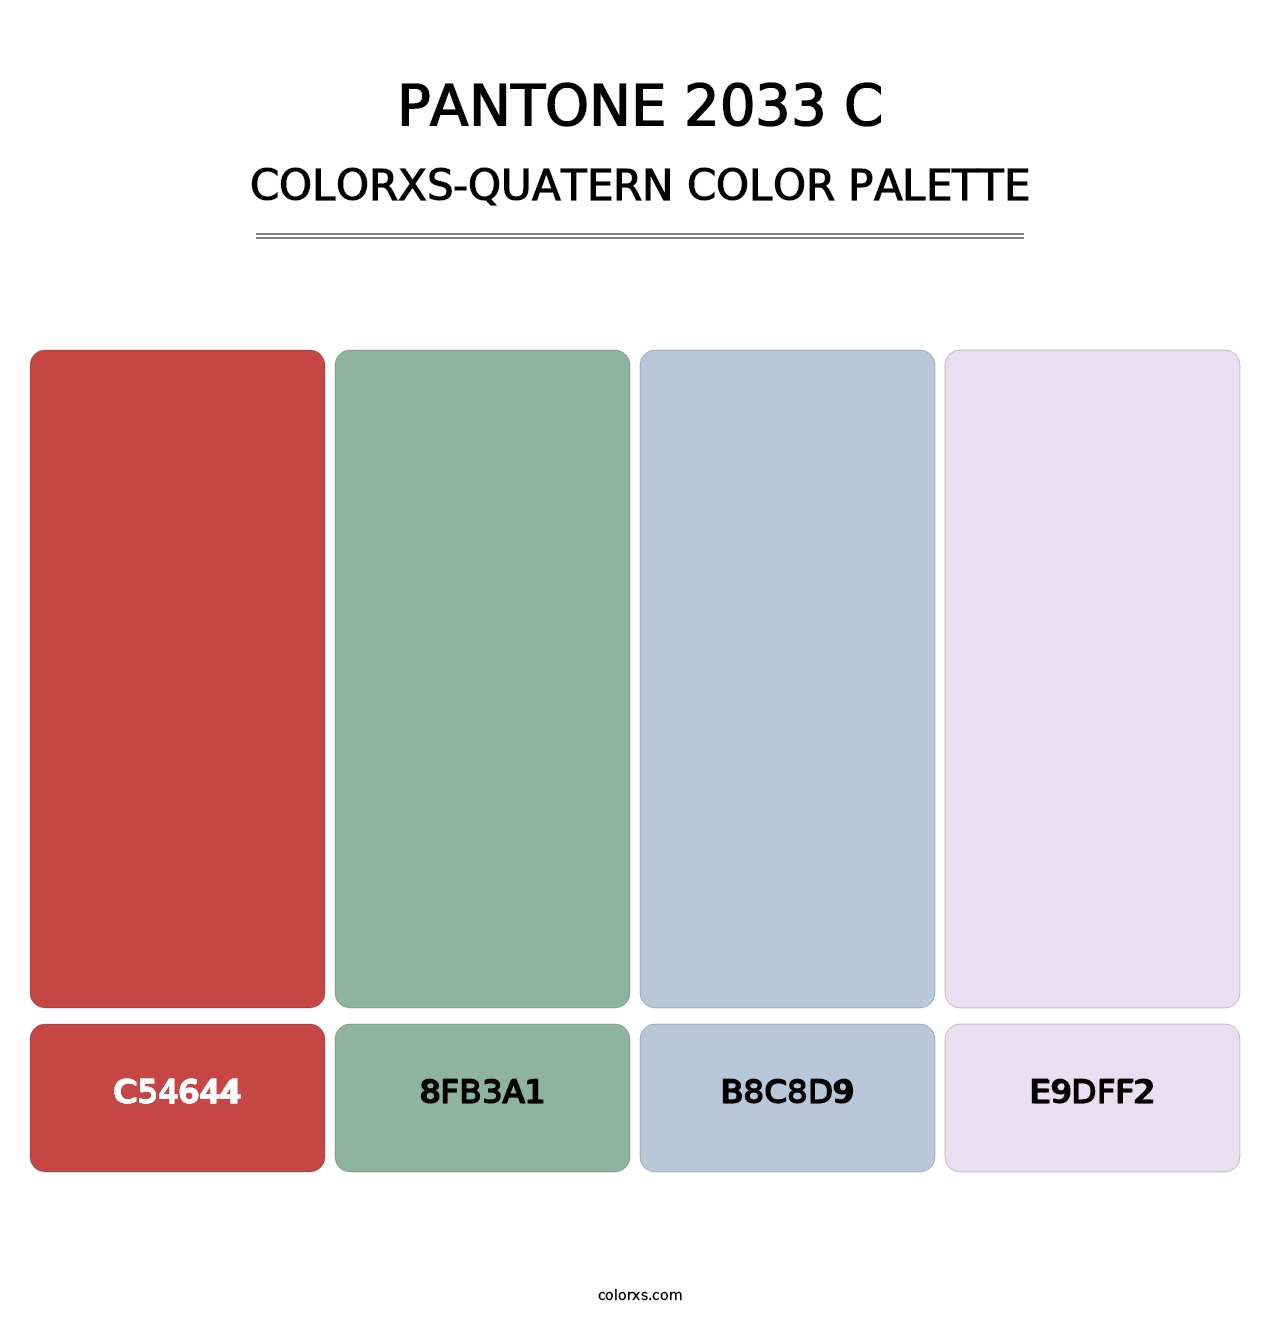 PANTONE 2033 C - Colorxs Quatern Palette